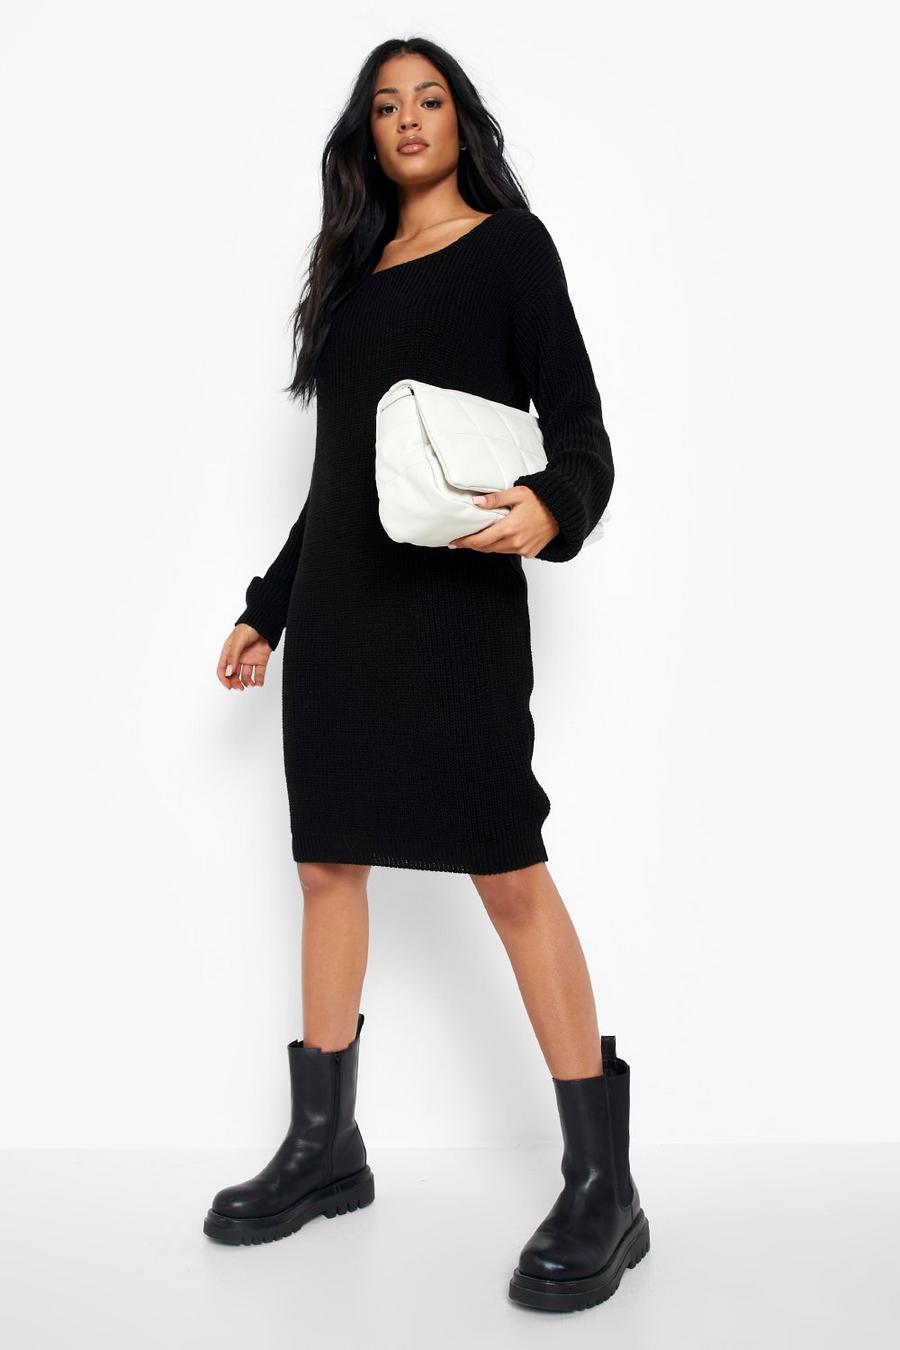 שחור שמלת סוודר עם צווארון אלכסוני, לנשים גבוהות image number 1